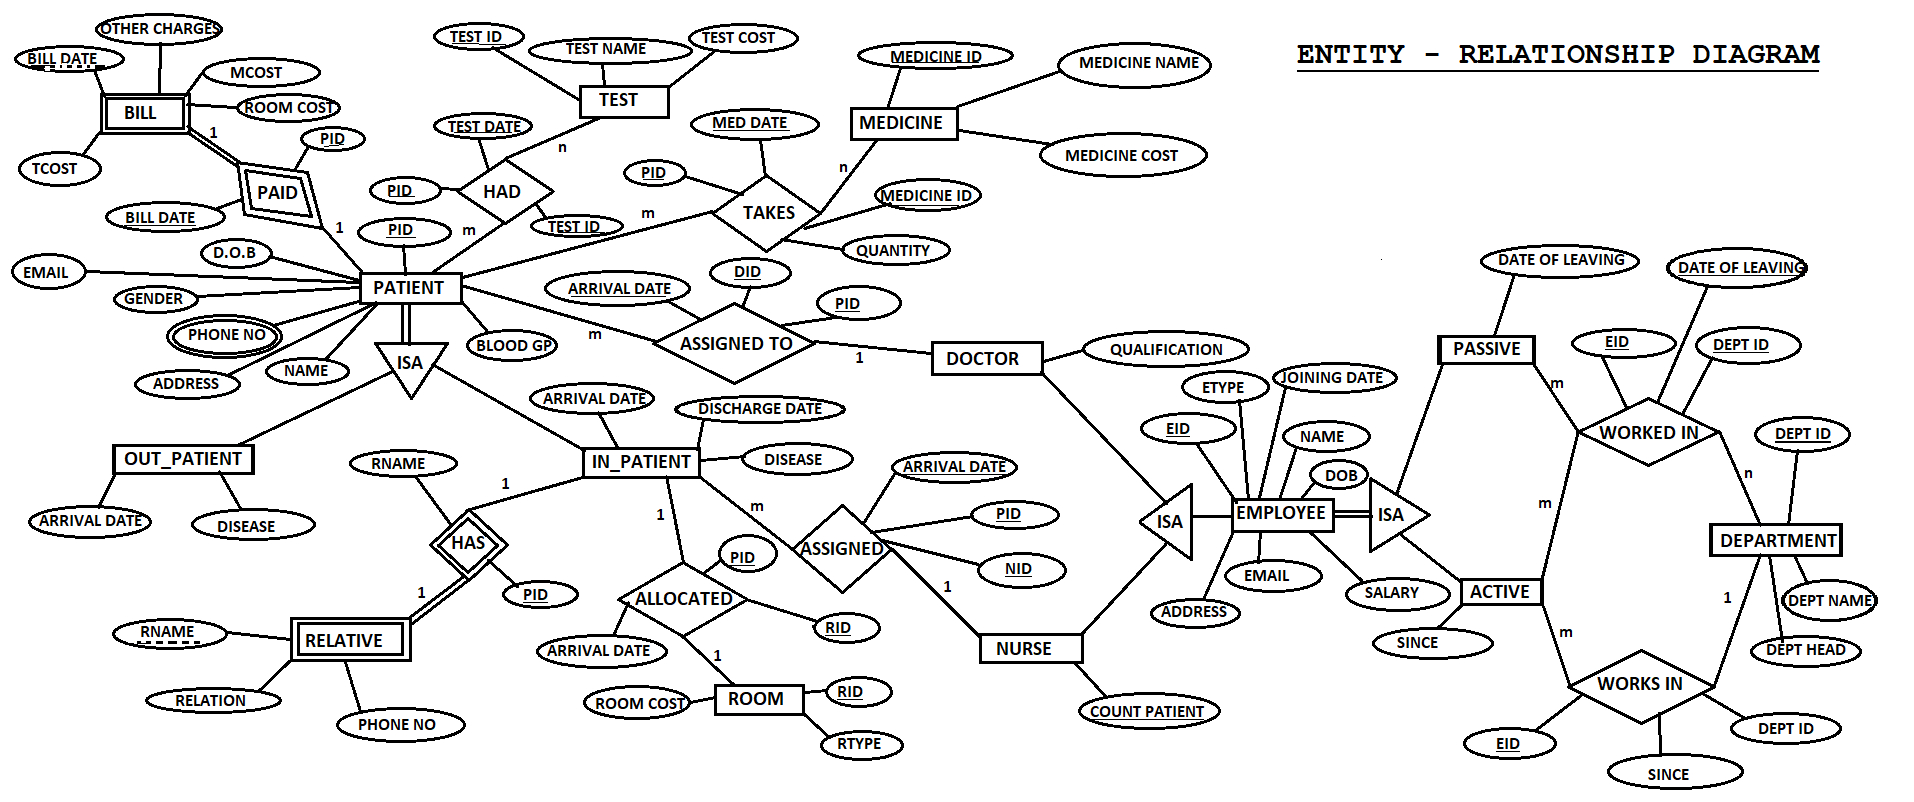 E-R Diagram · Issue #1 · Vikesh8860/hospital-Management in Er Diagram Github